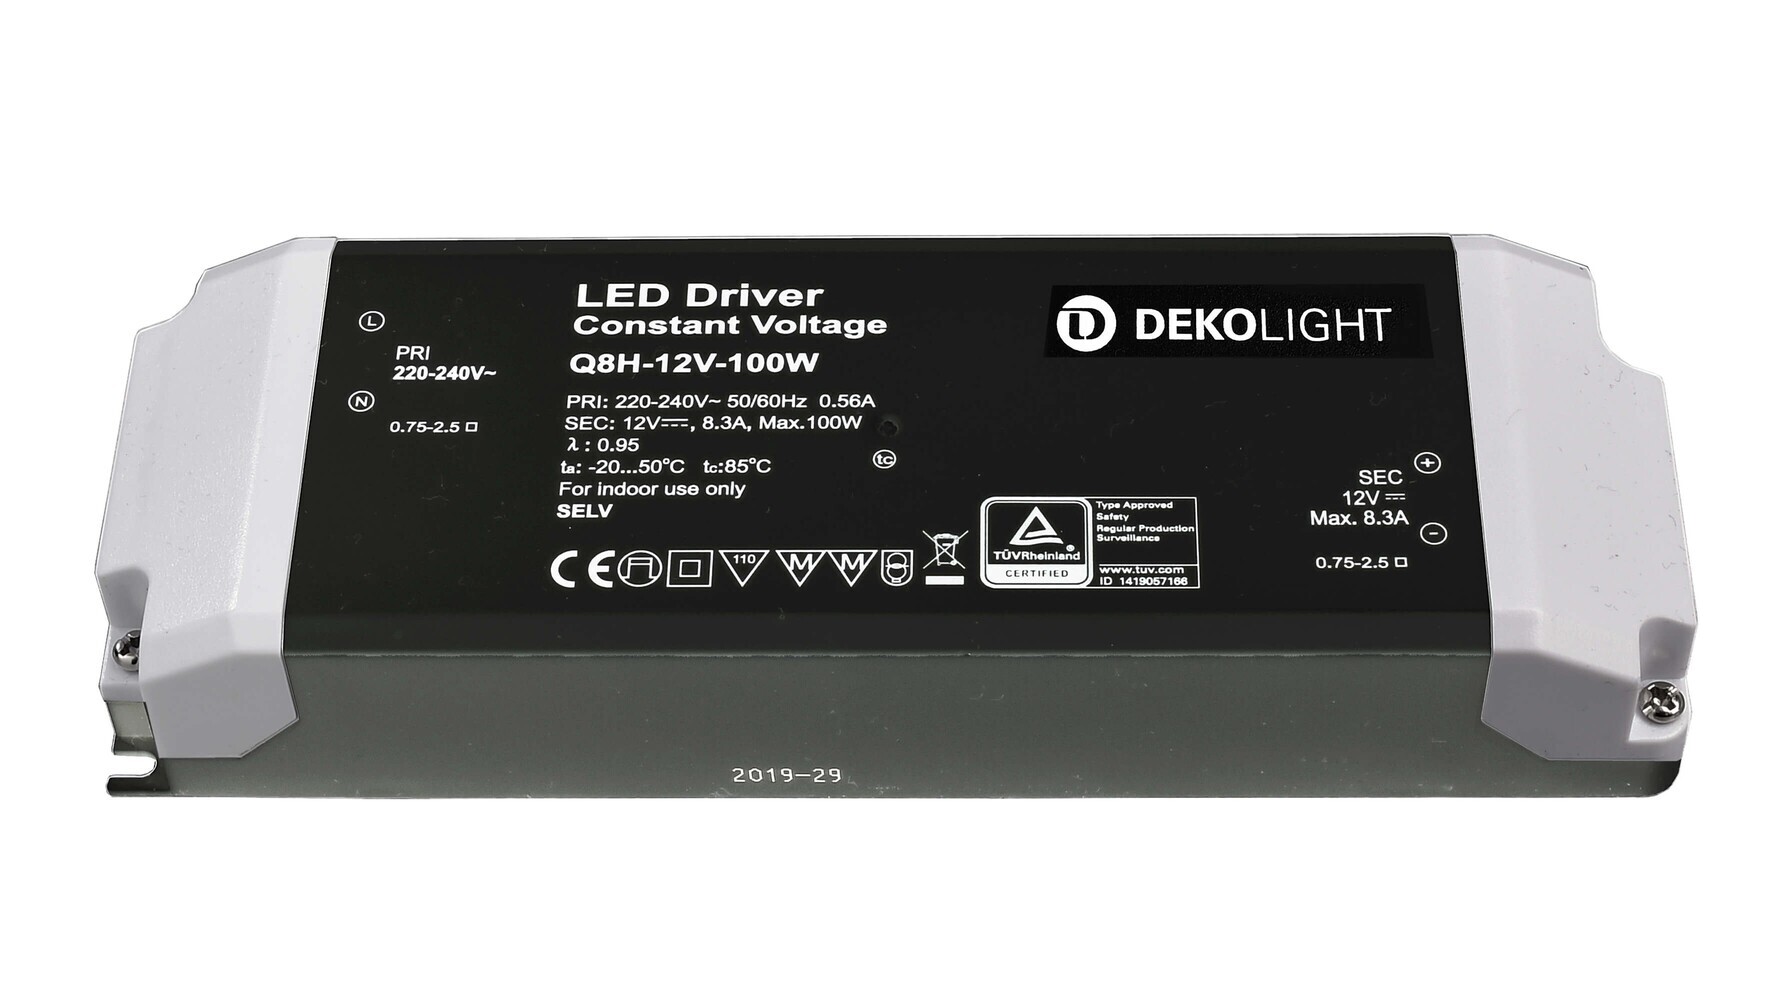 Hochwertiges LED Netzteil der Marke Deko-Light in professioneller Ausführung